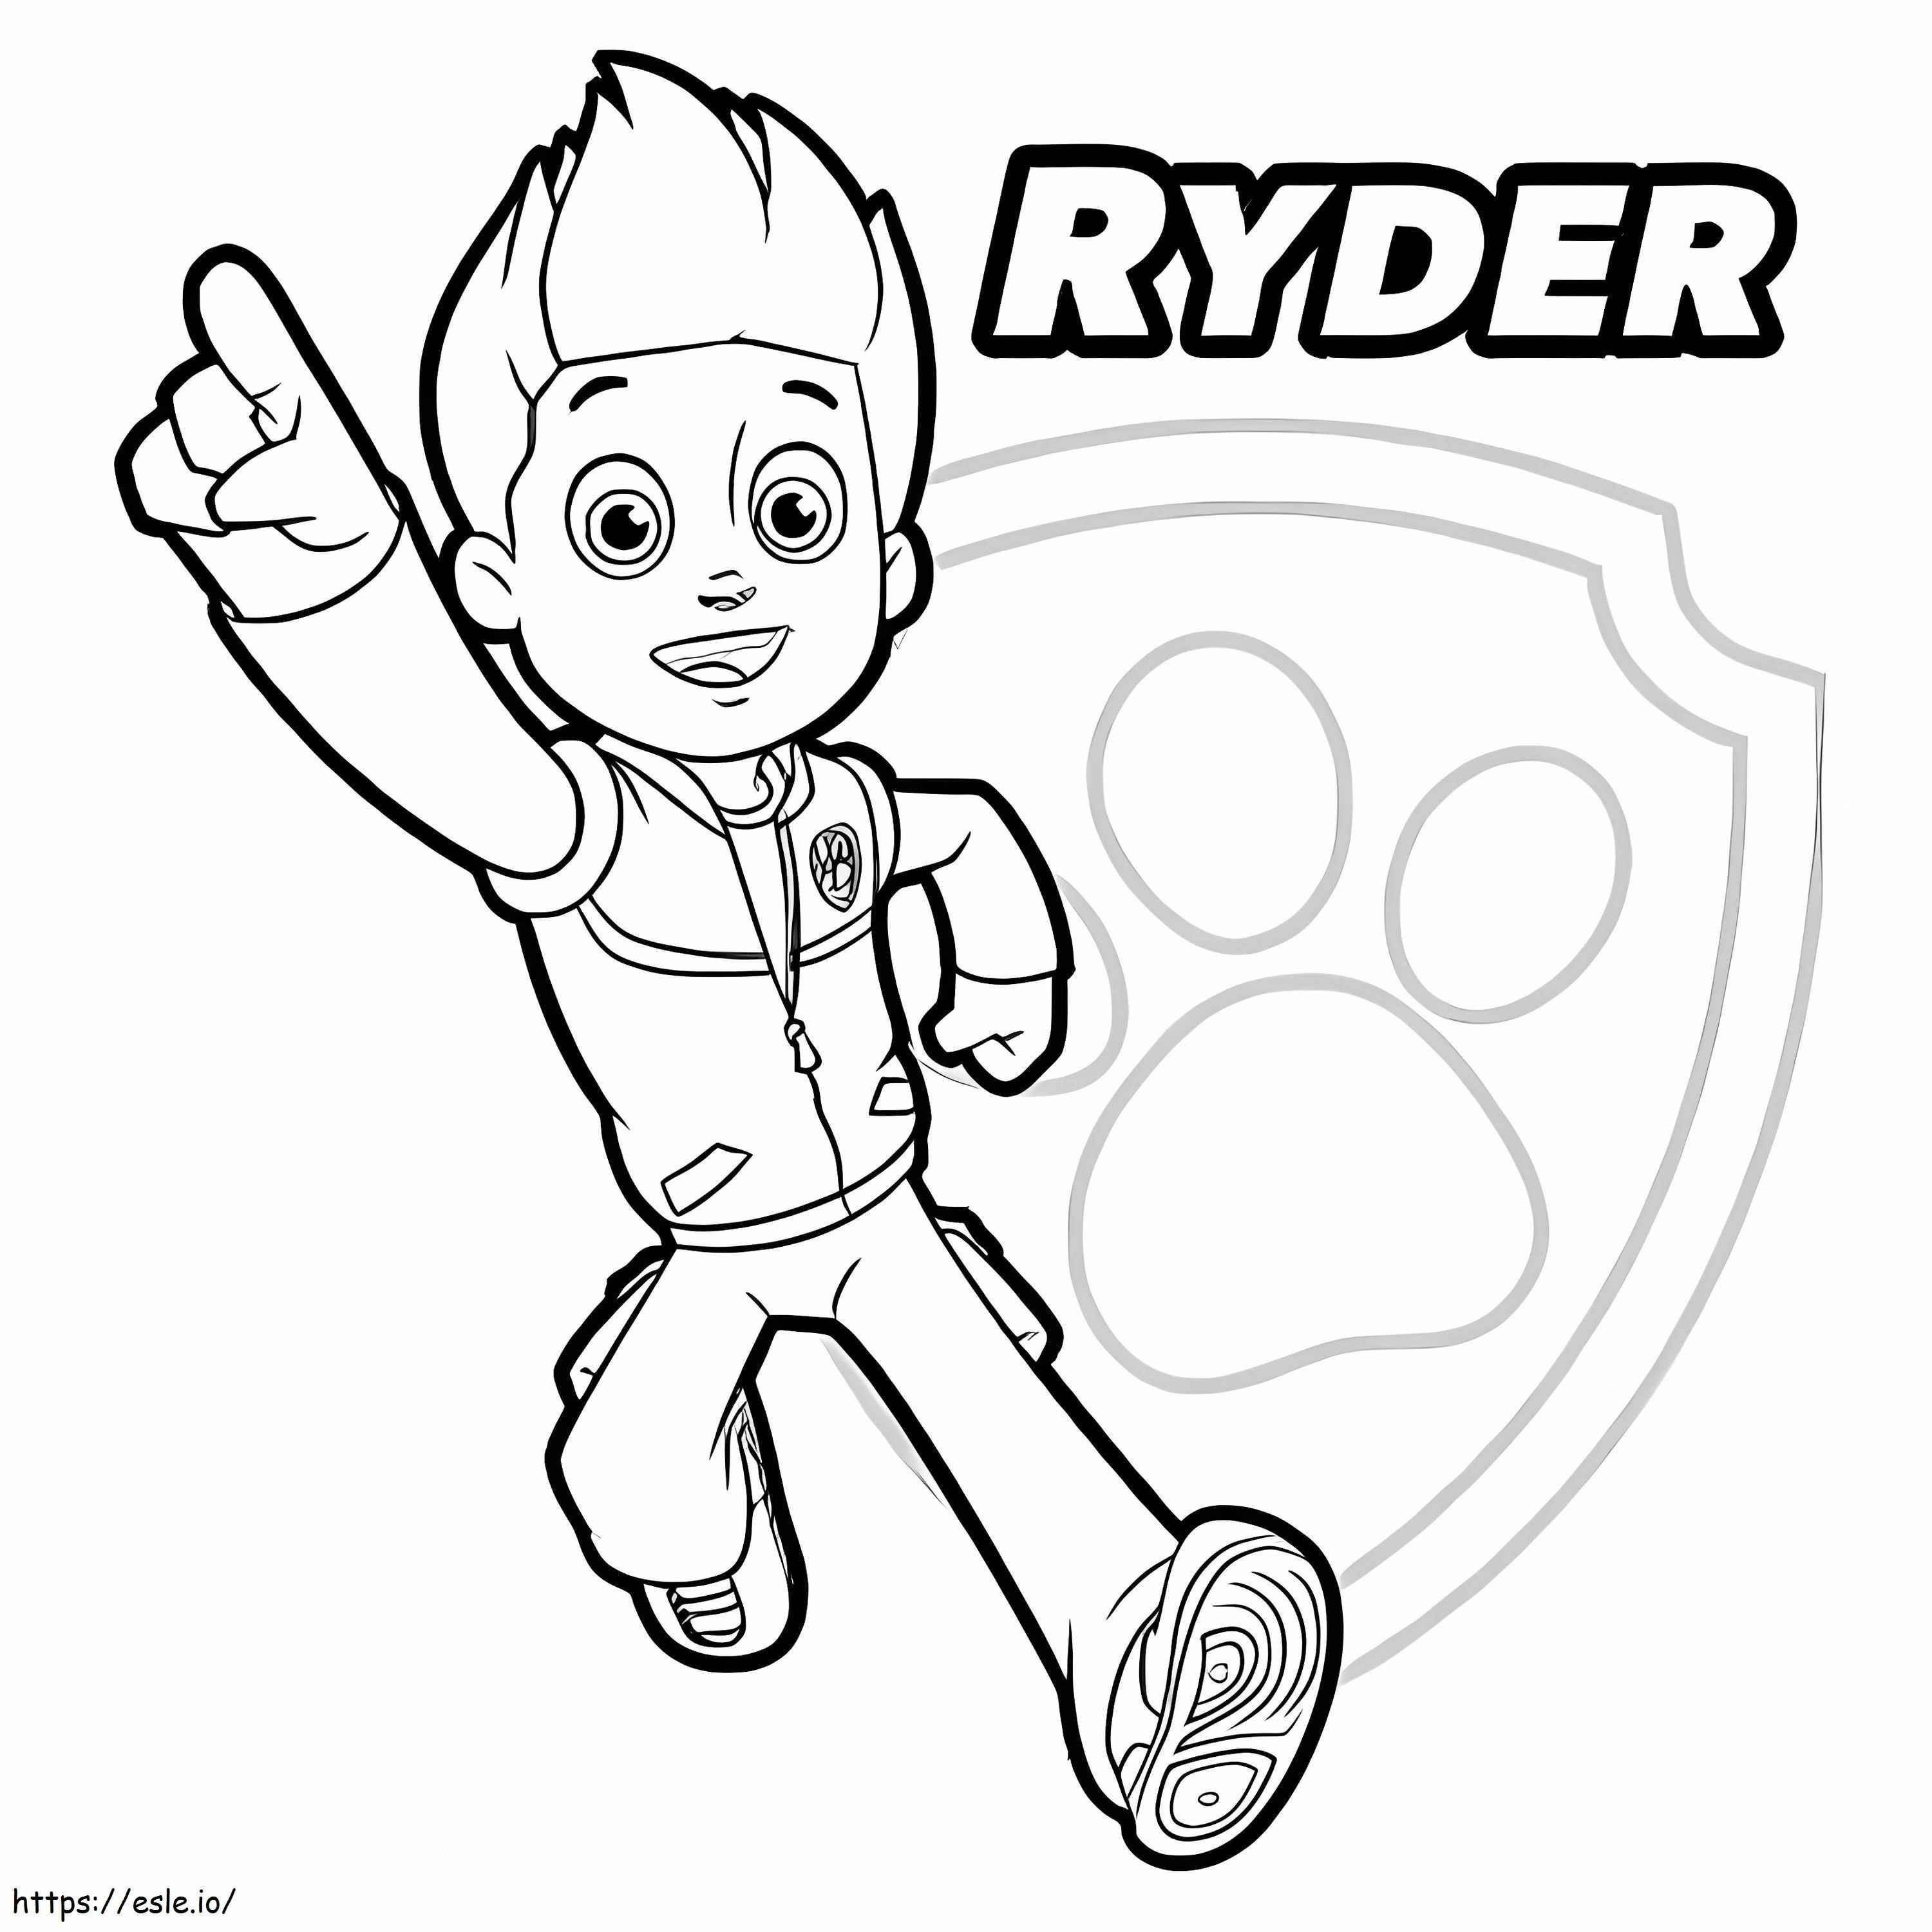 Ryder és Mancsnyomat jelvény kifestő